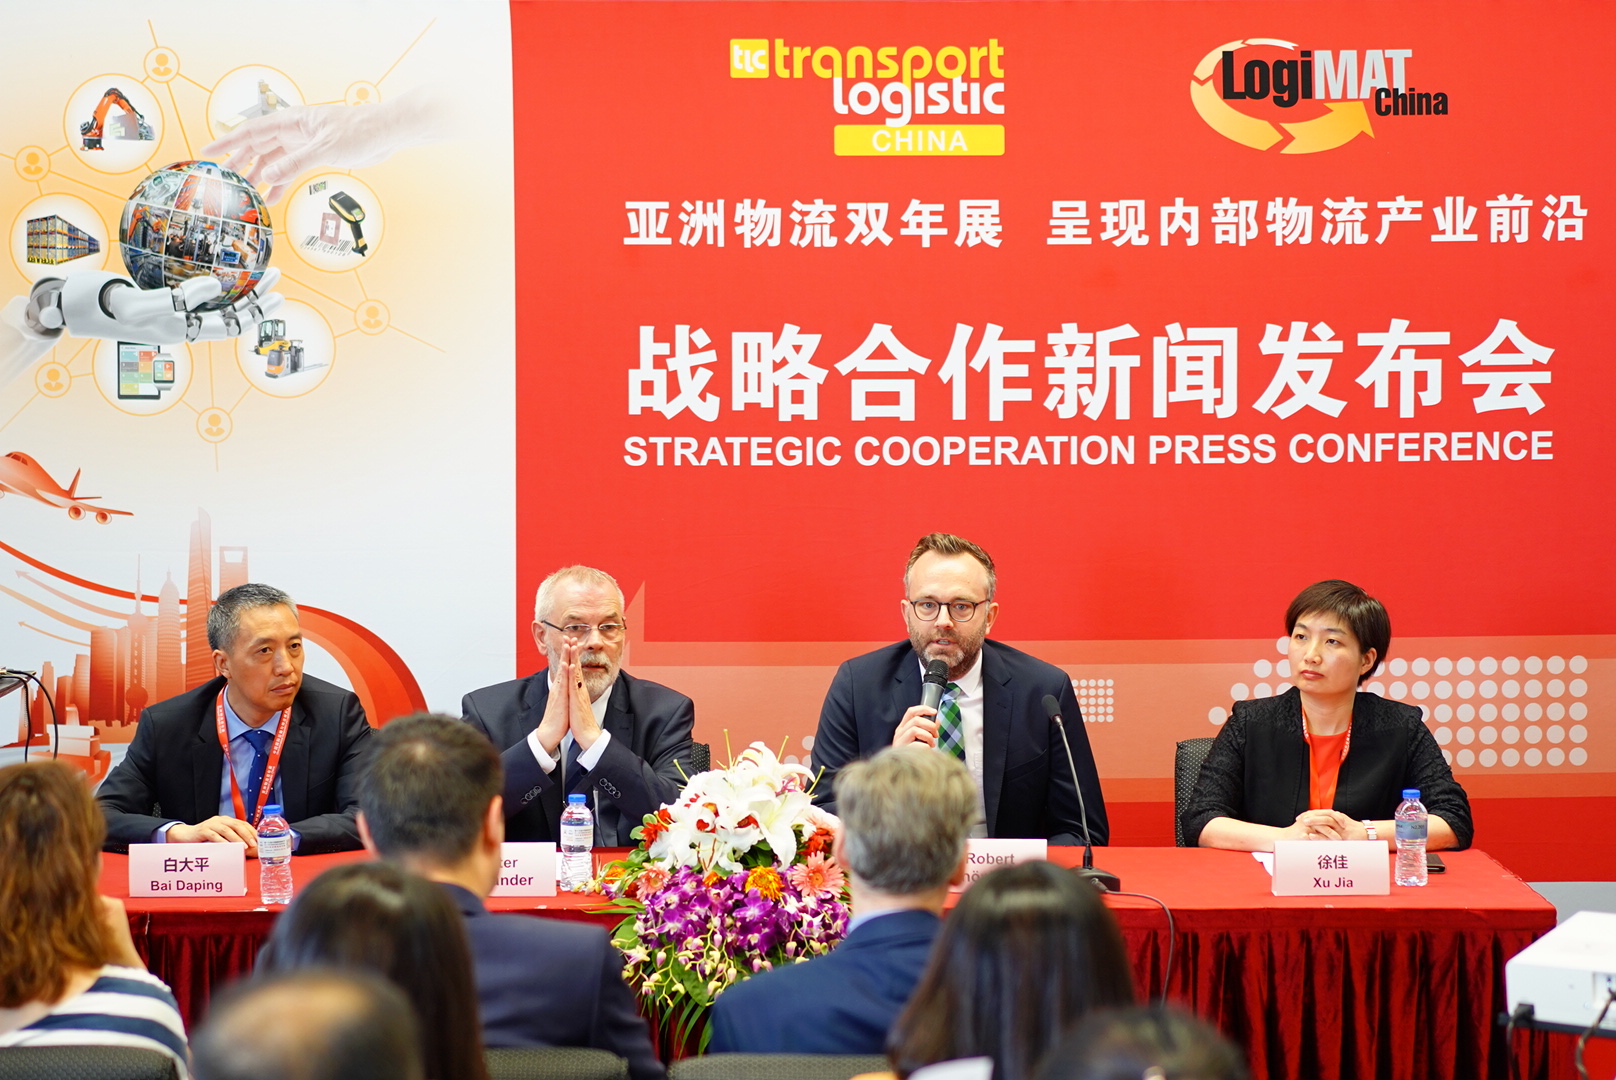 亚洲物流双年展与LogiMAT China开启战略合作 2019年起联袂在沪举办